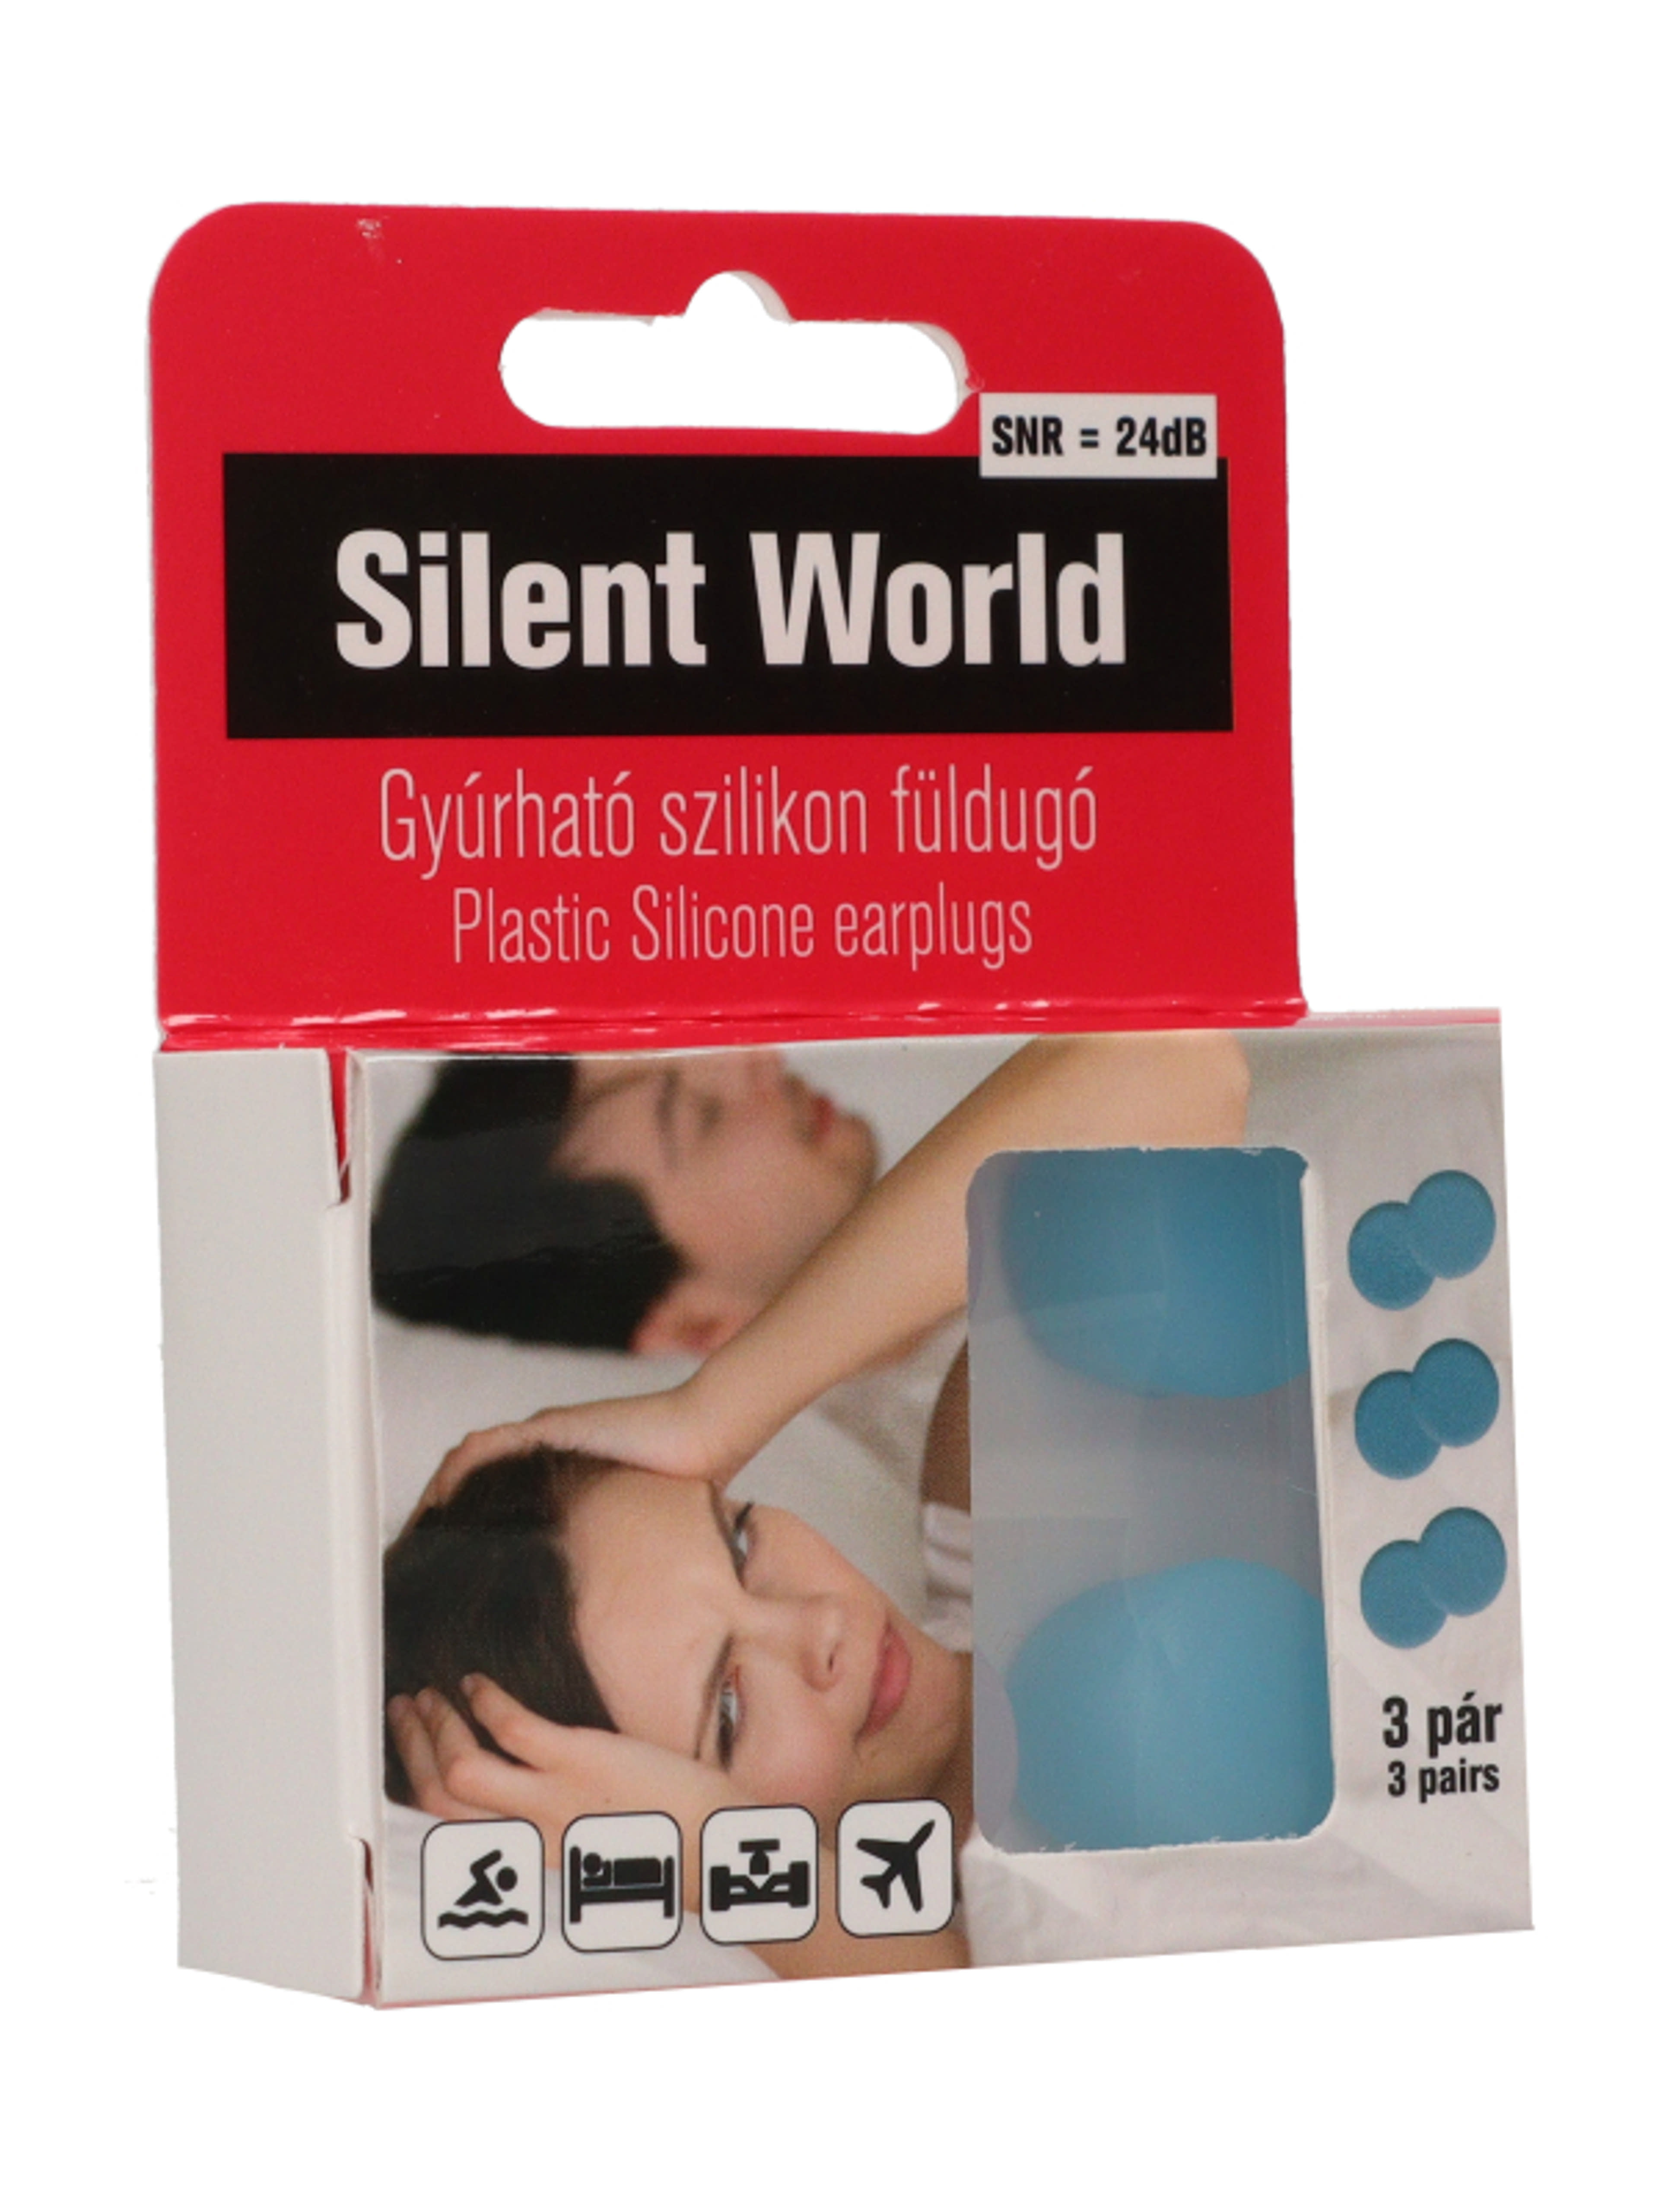 Silent world gyúrható szilikon füldugó 3 pár - 6 db-5